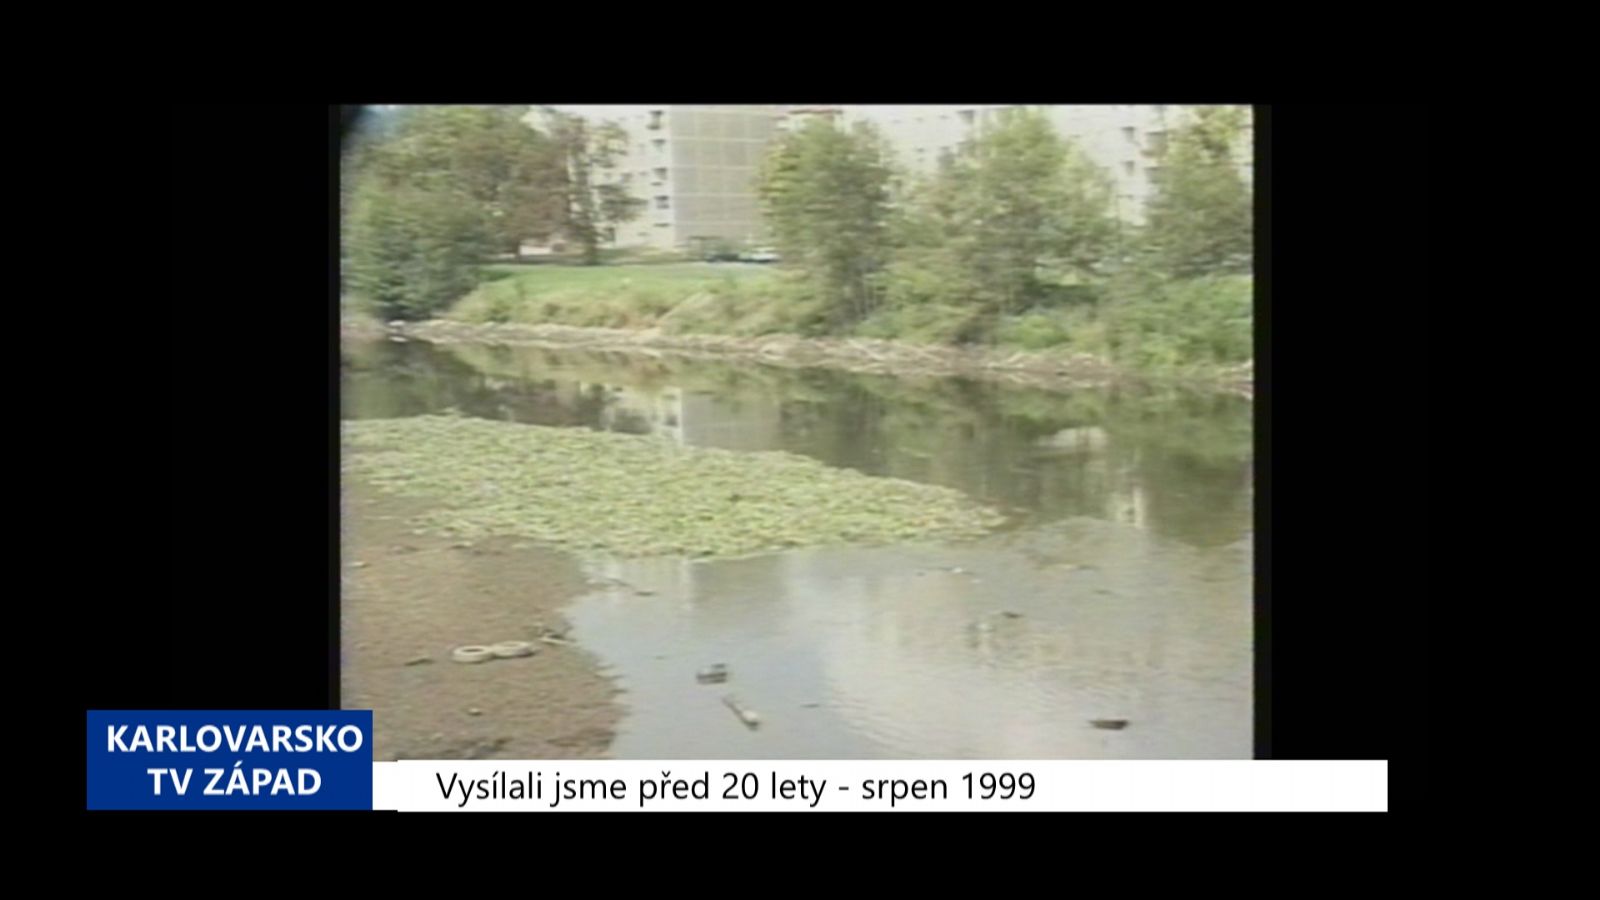 1999 – Cheb: Pyrotechnici kontrolovali jez na Zlatém vrchu (TV Západ)